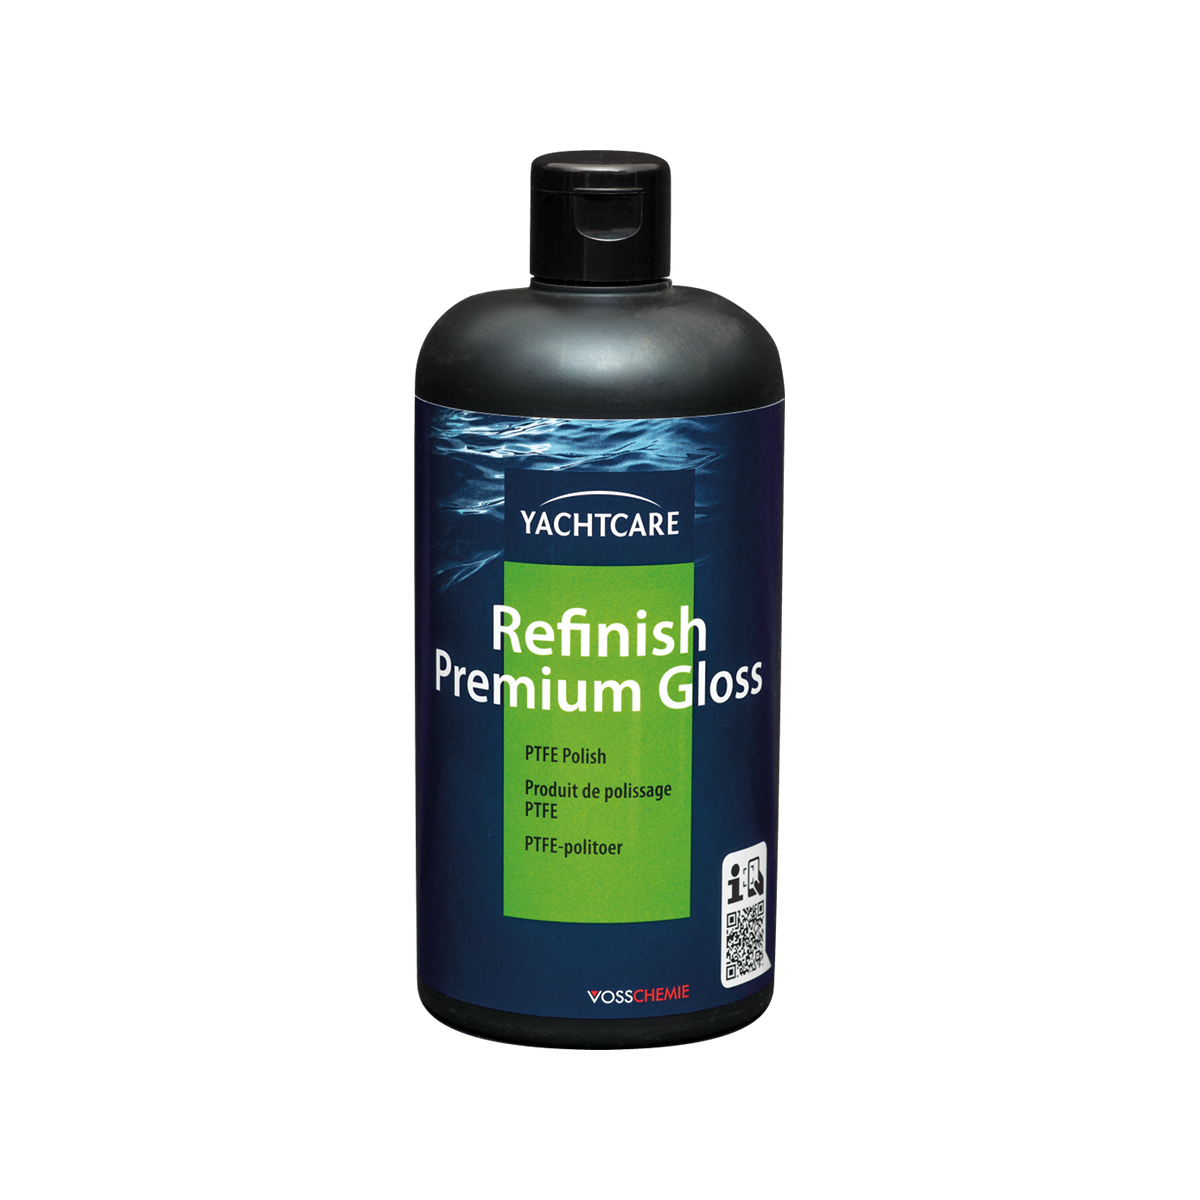 Yachtcare Refinish Premium Gloss cire de finition - 500ml